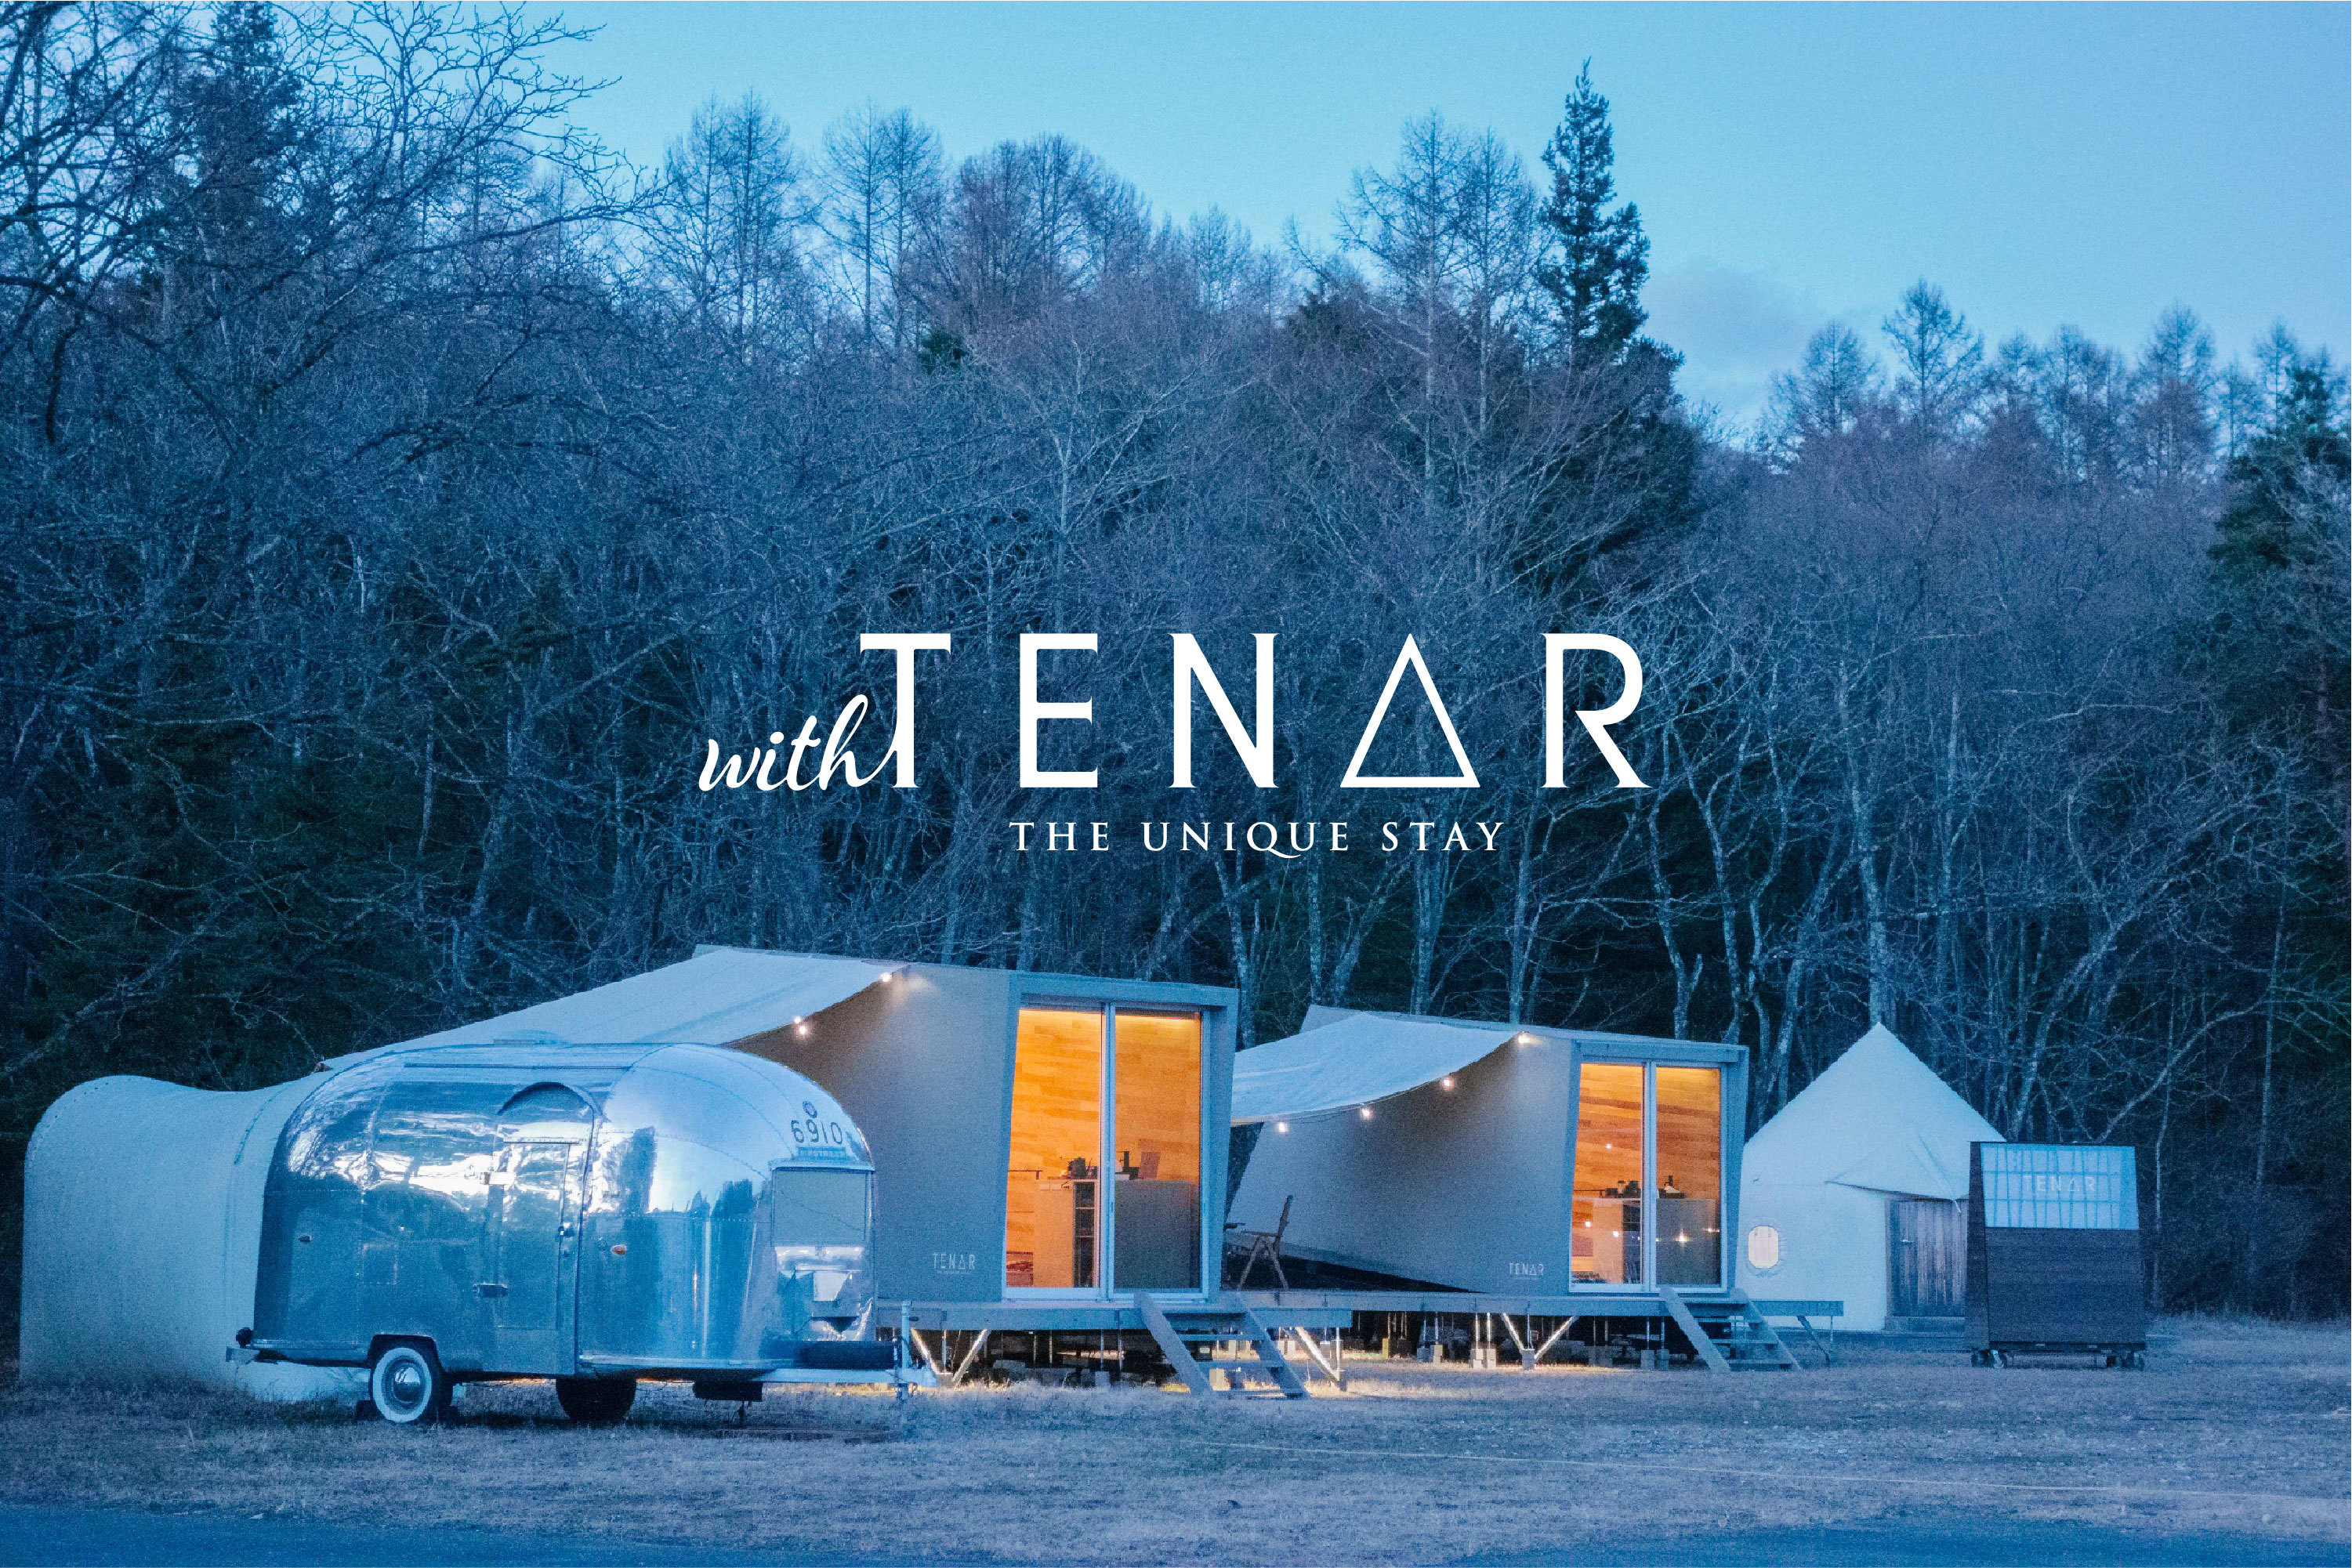 アウトドアホテル「TENAR」から新フィールドが2月に登場！
テーマ性が特徴の新ブランド The Unique Stay withTENAR　
“アウトドア体験を、ユニークに、もっと自由に。”